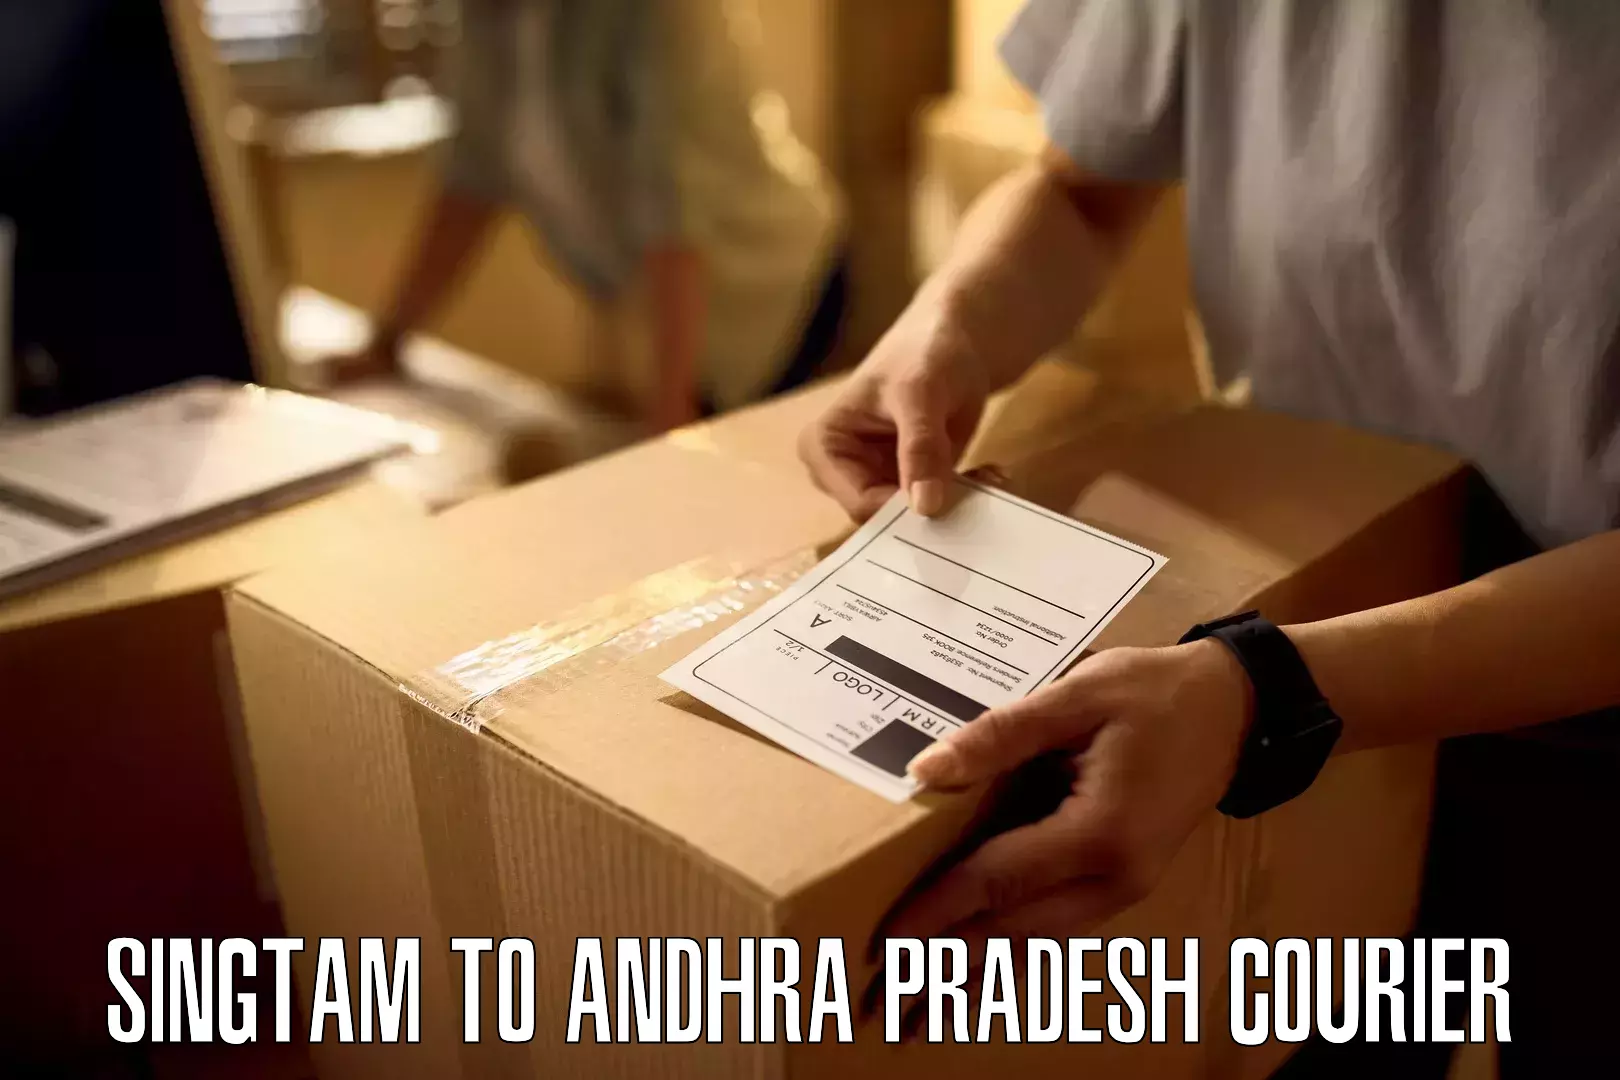 Innovative courier solutions Singtam to Andhra Pradesh